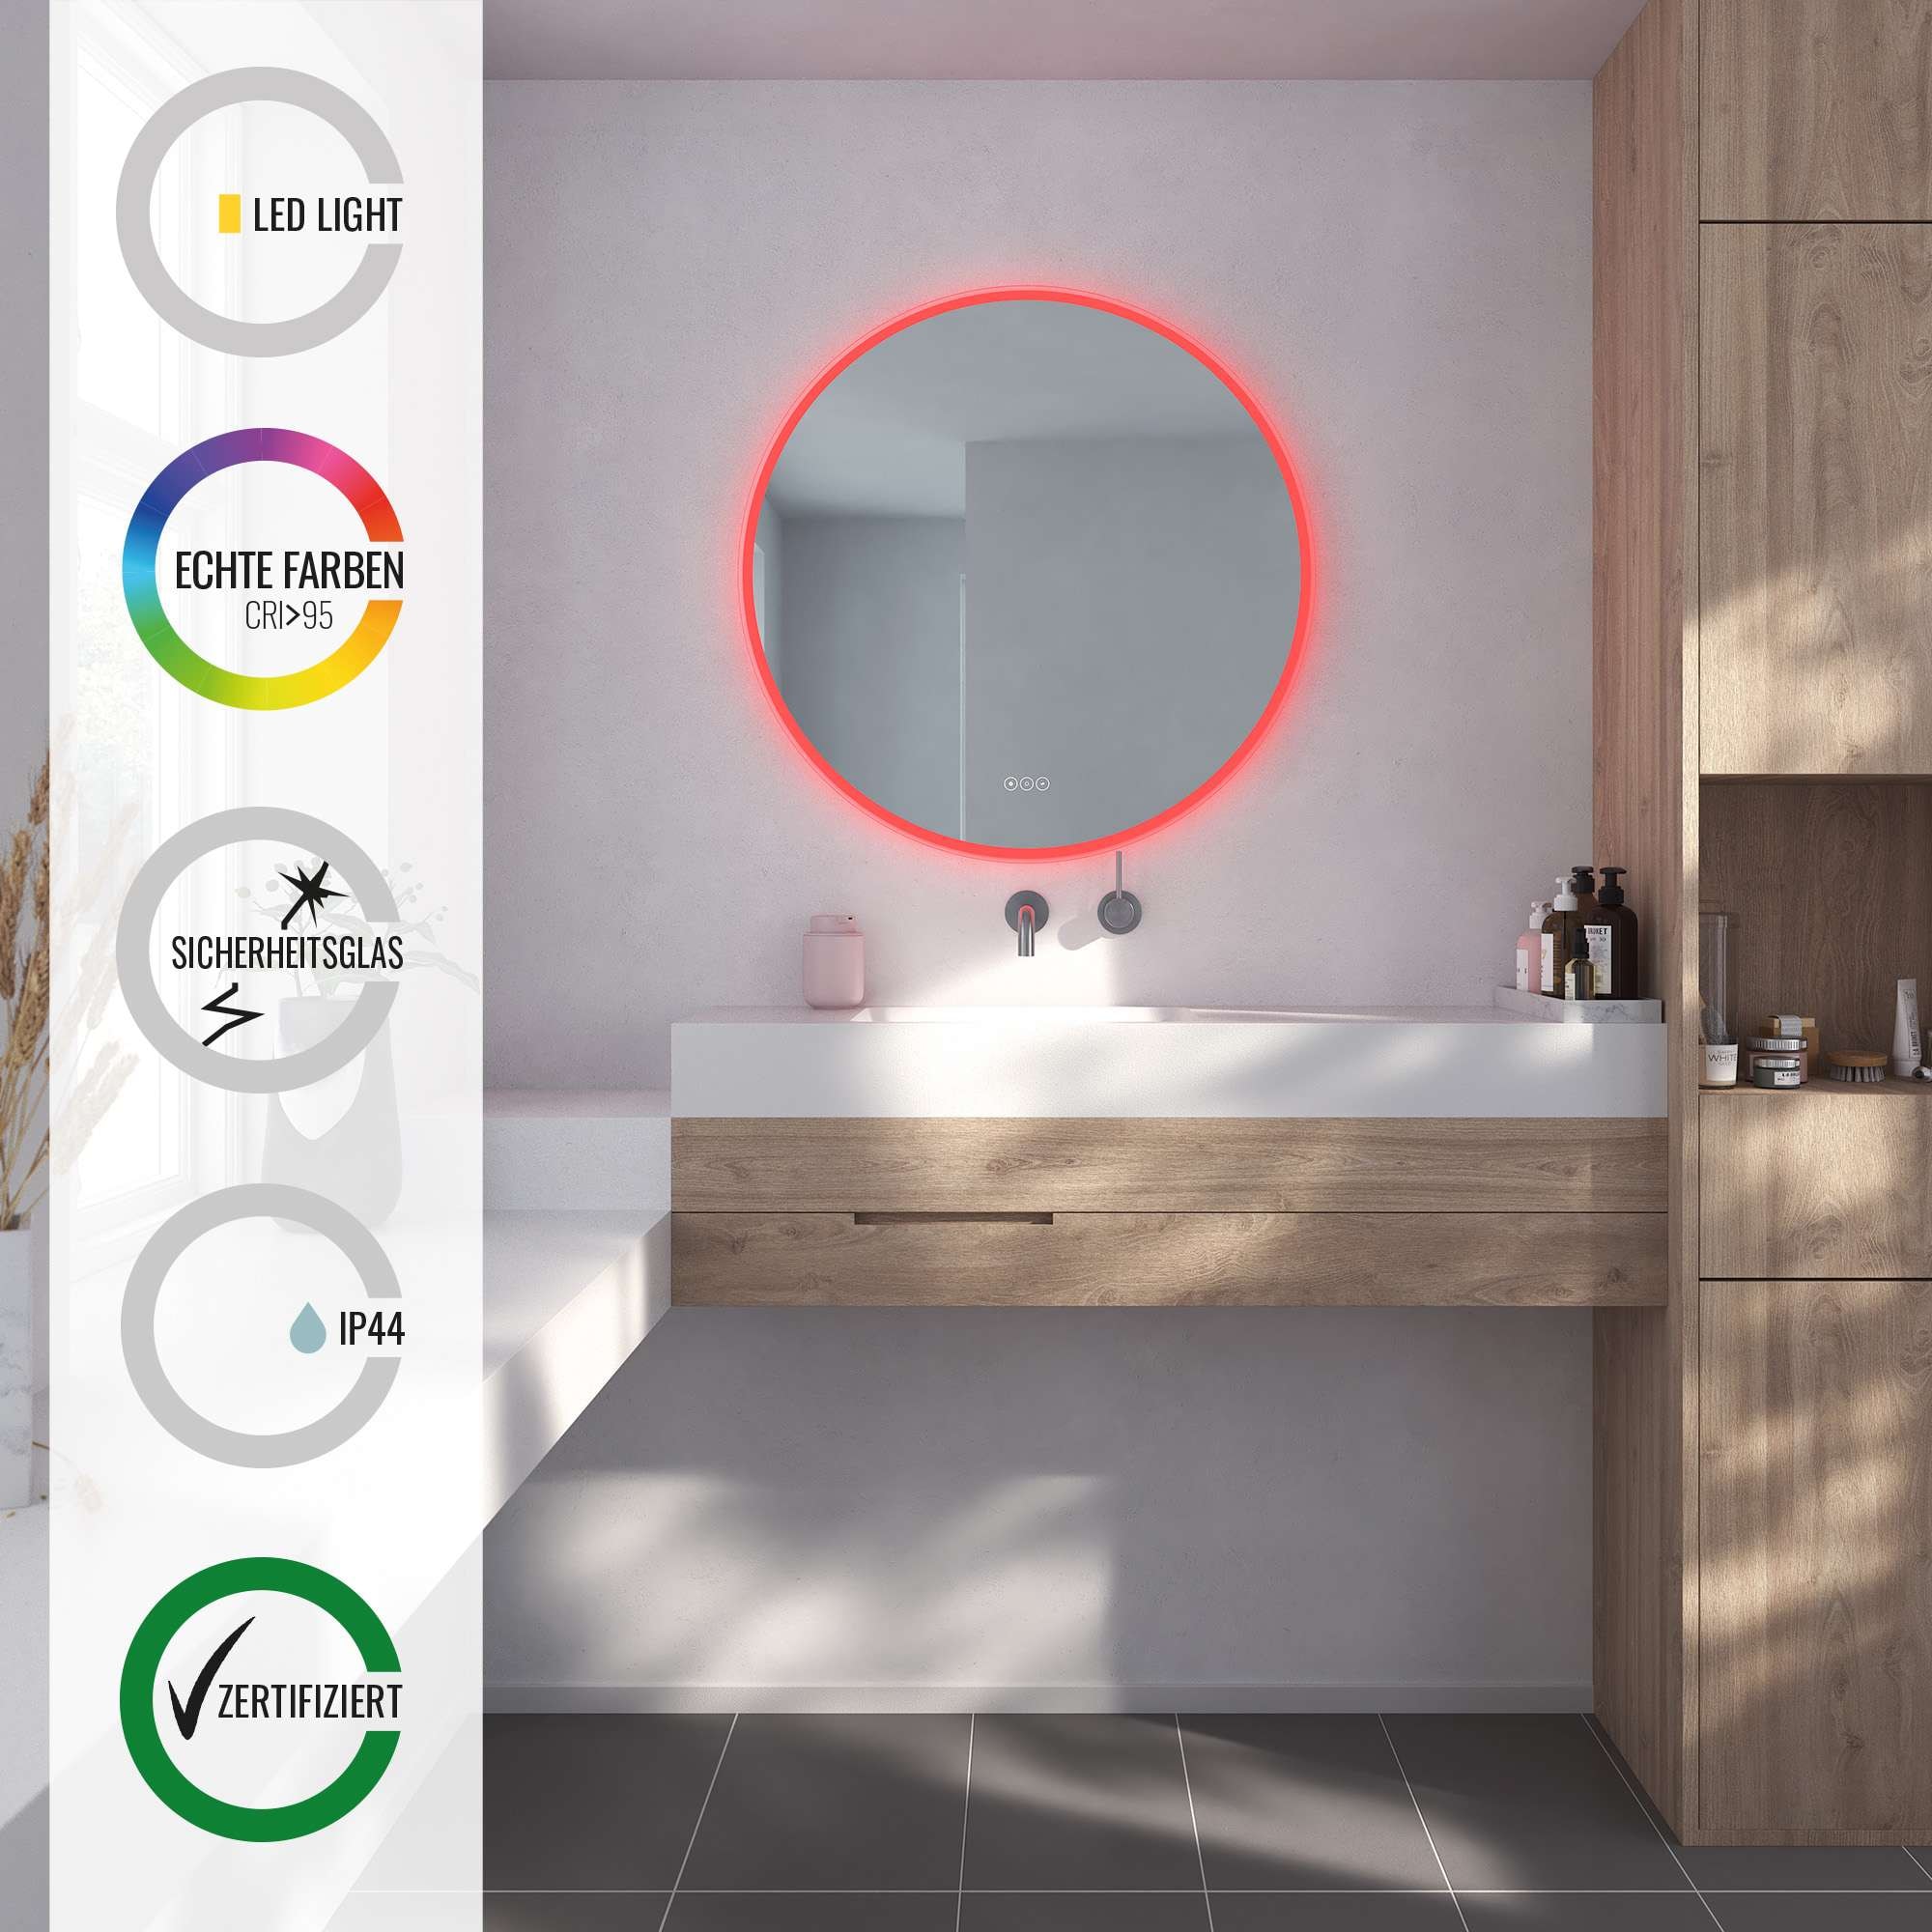 Loevschall Badspiegel »Johannesburg RGB Badezimmerspiegel, rund, Farbwechsel, dimmbar«, mit MultiWhite® und RGB-Licht, Touchpanel für Lichtsteuerung